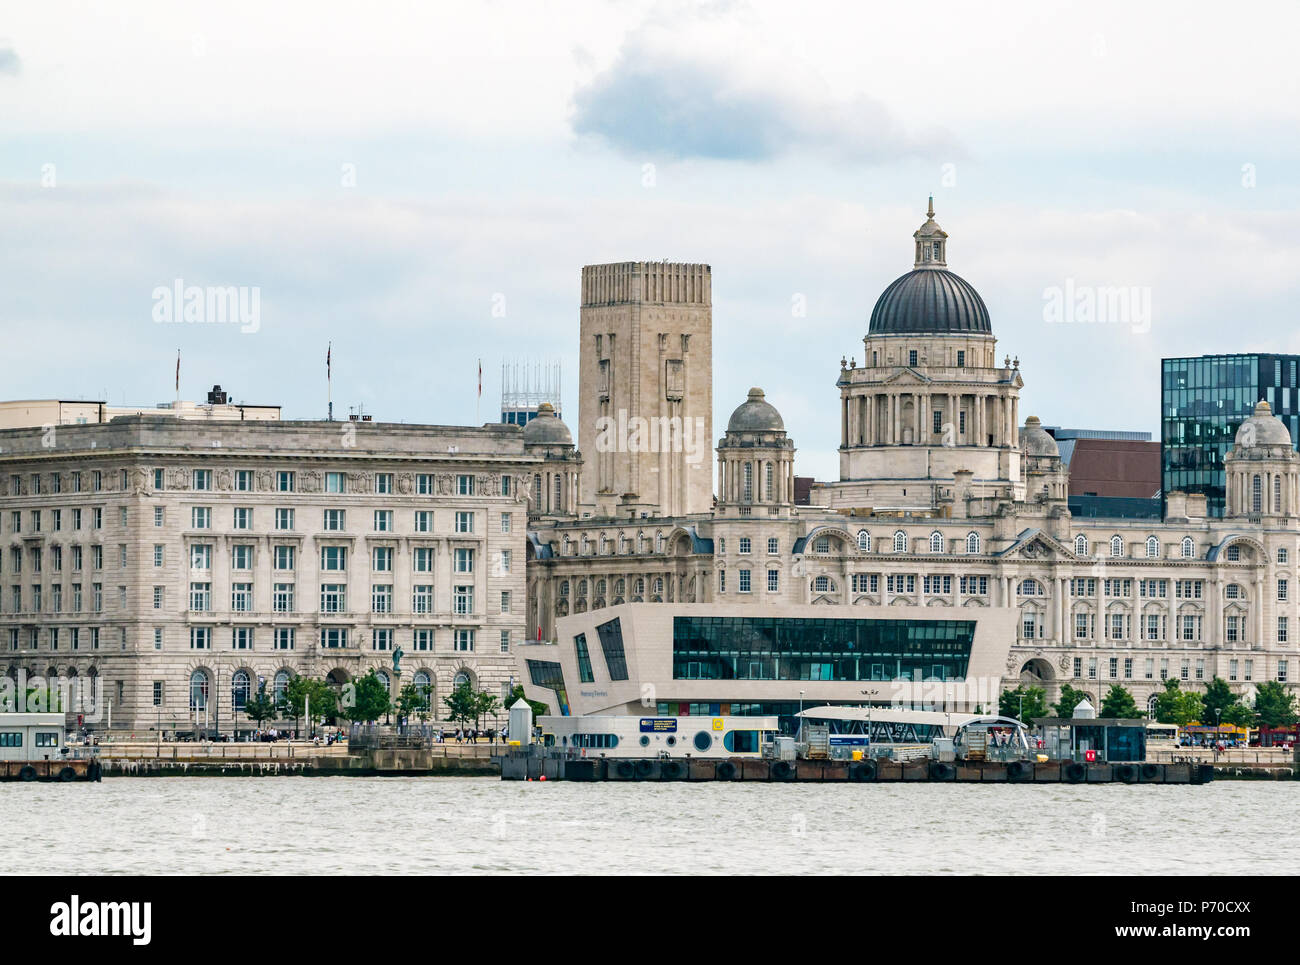 Die drei Grazien, der Hafen von Liverpool Gebäude, Cunard Building und Museum von Liverpool und Georges Dock Tower, Pier Head, Liverpool, England, UK Stockfoto